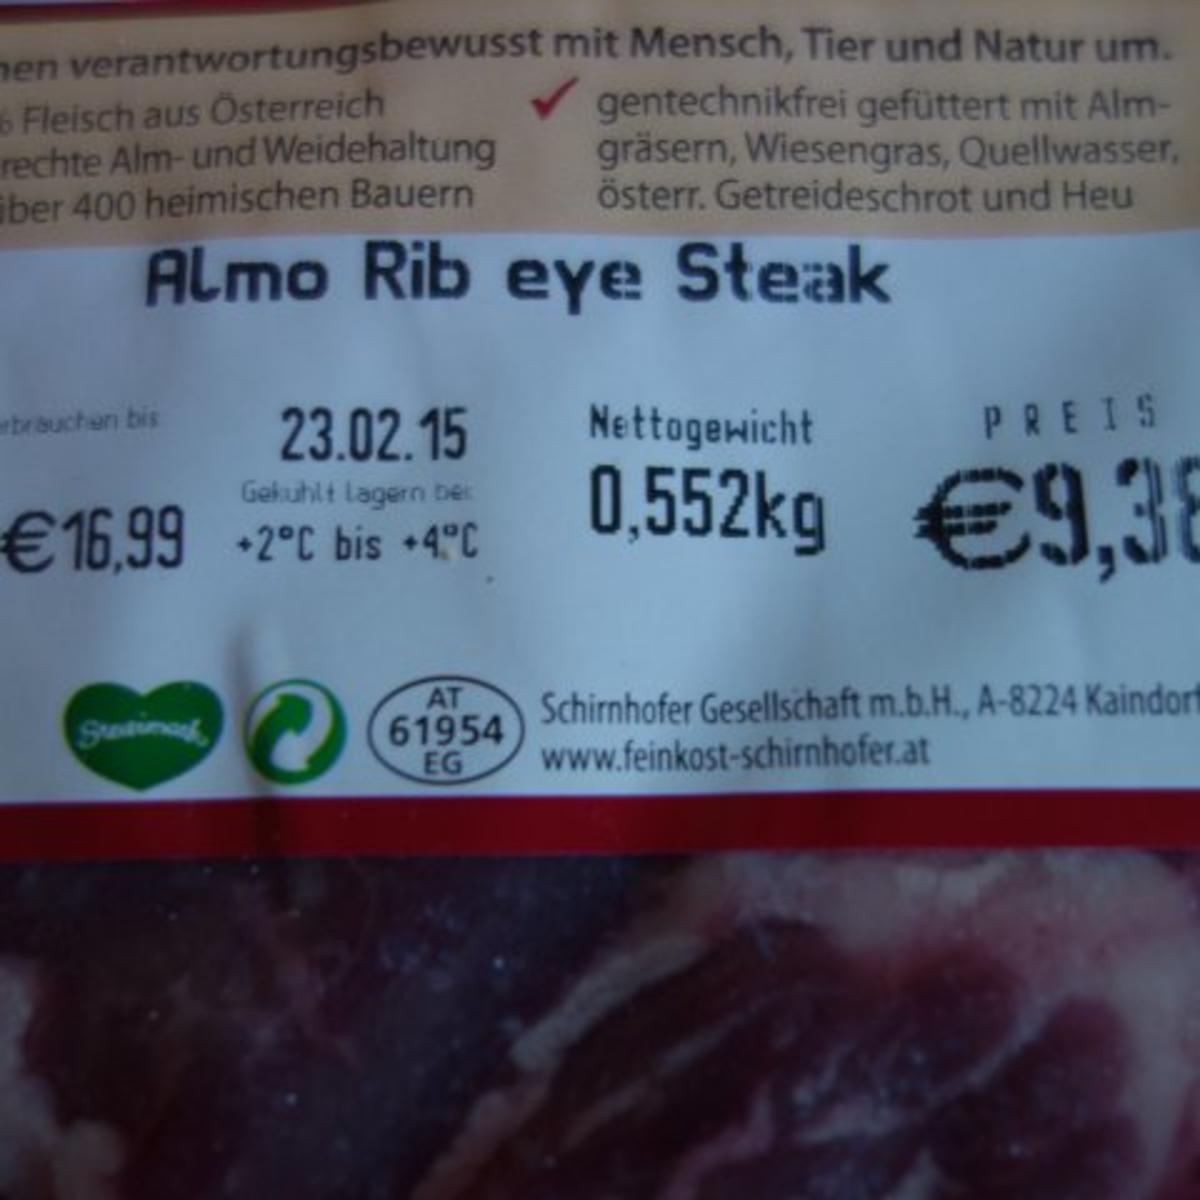 Rib eye Steak vom Almochs - Rezept - Bild Nr. 3